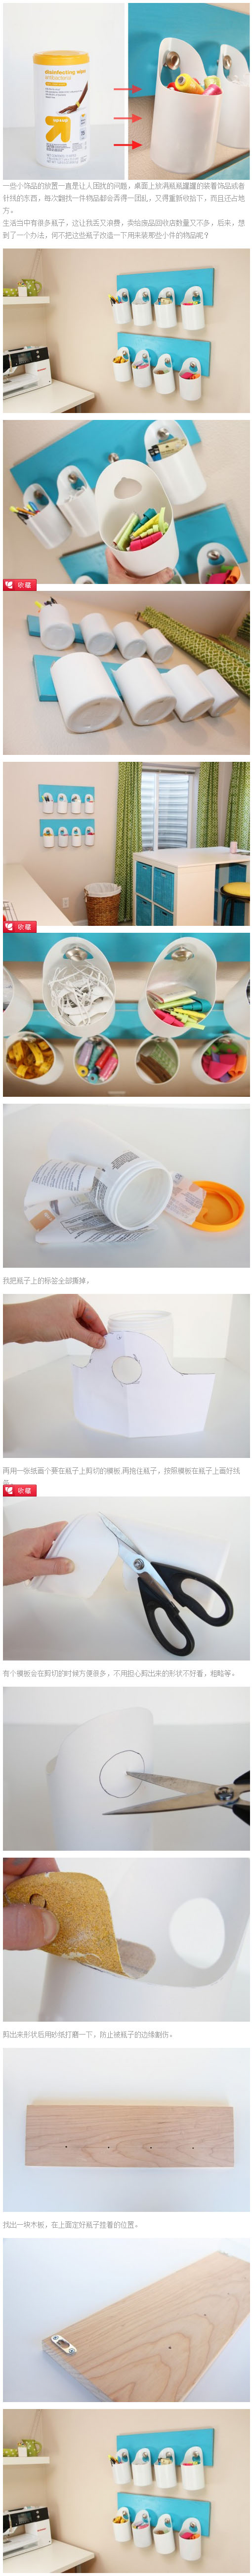 塑料瓶制作的创意收纳壁挂装饰小件物品容器 来源：唯美系—diy小白